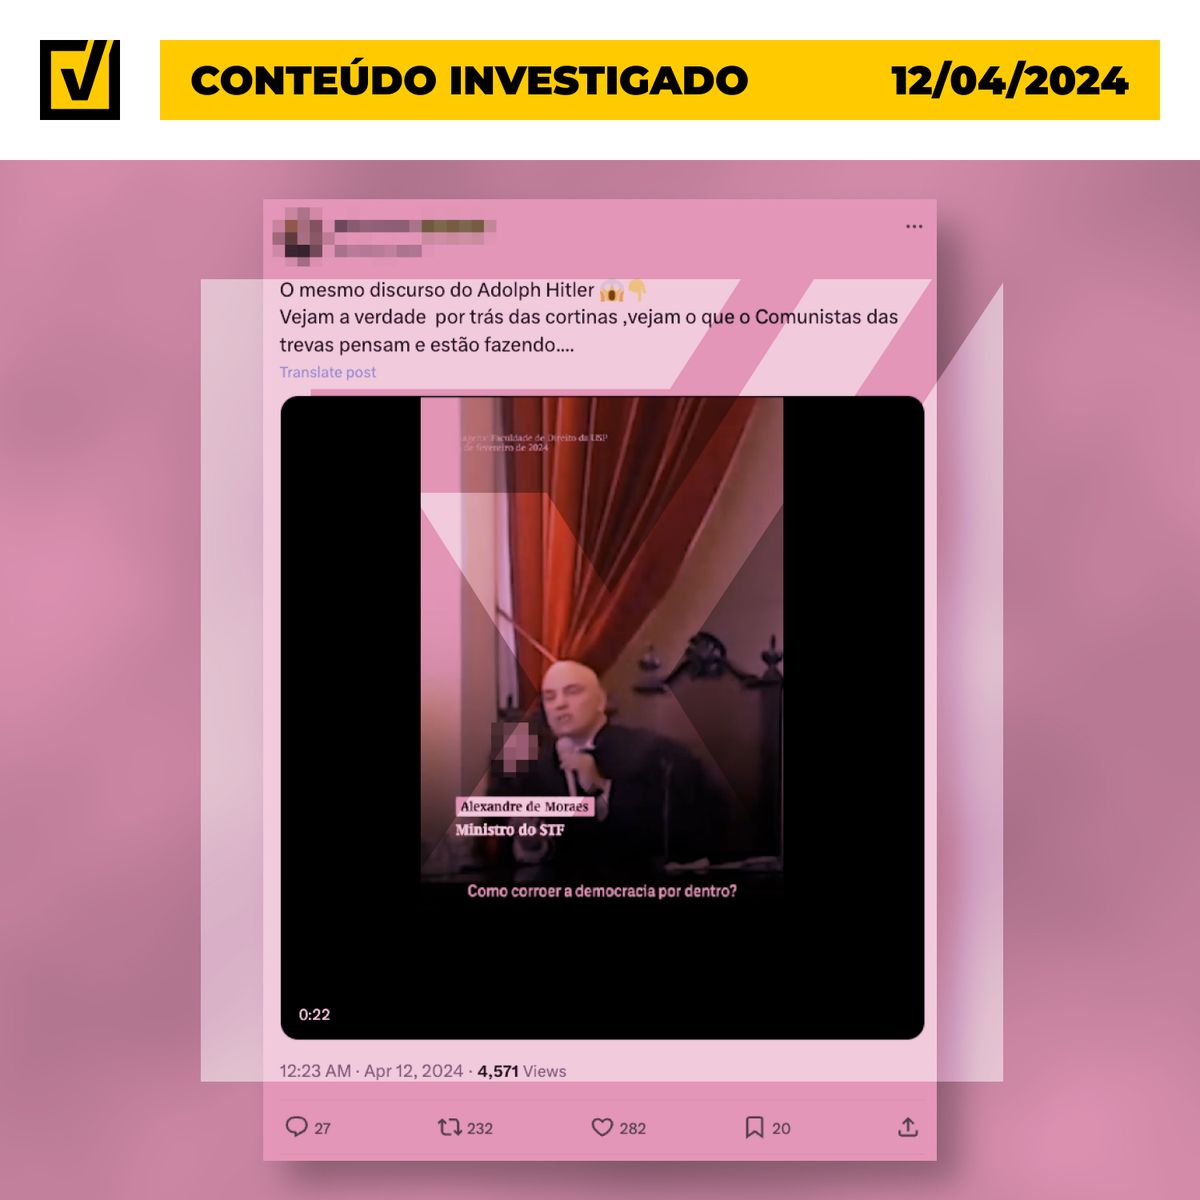 Post engana ao dizer que Alexandre de Moraes planeja “corroer a democracia por dentro”